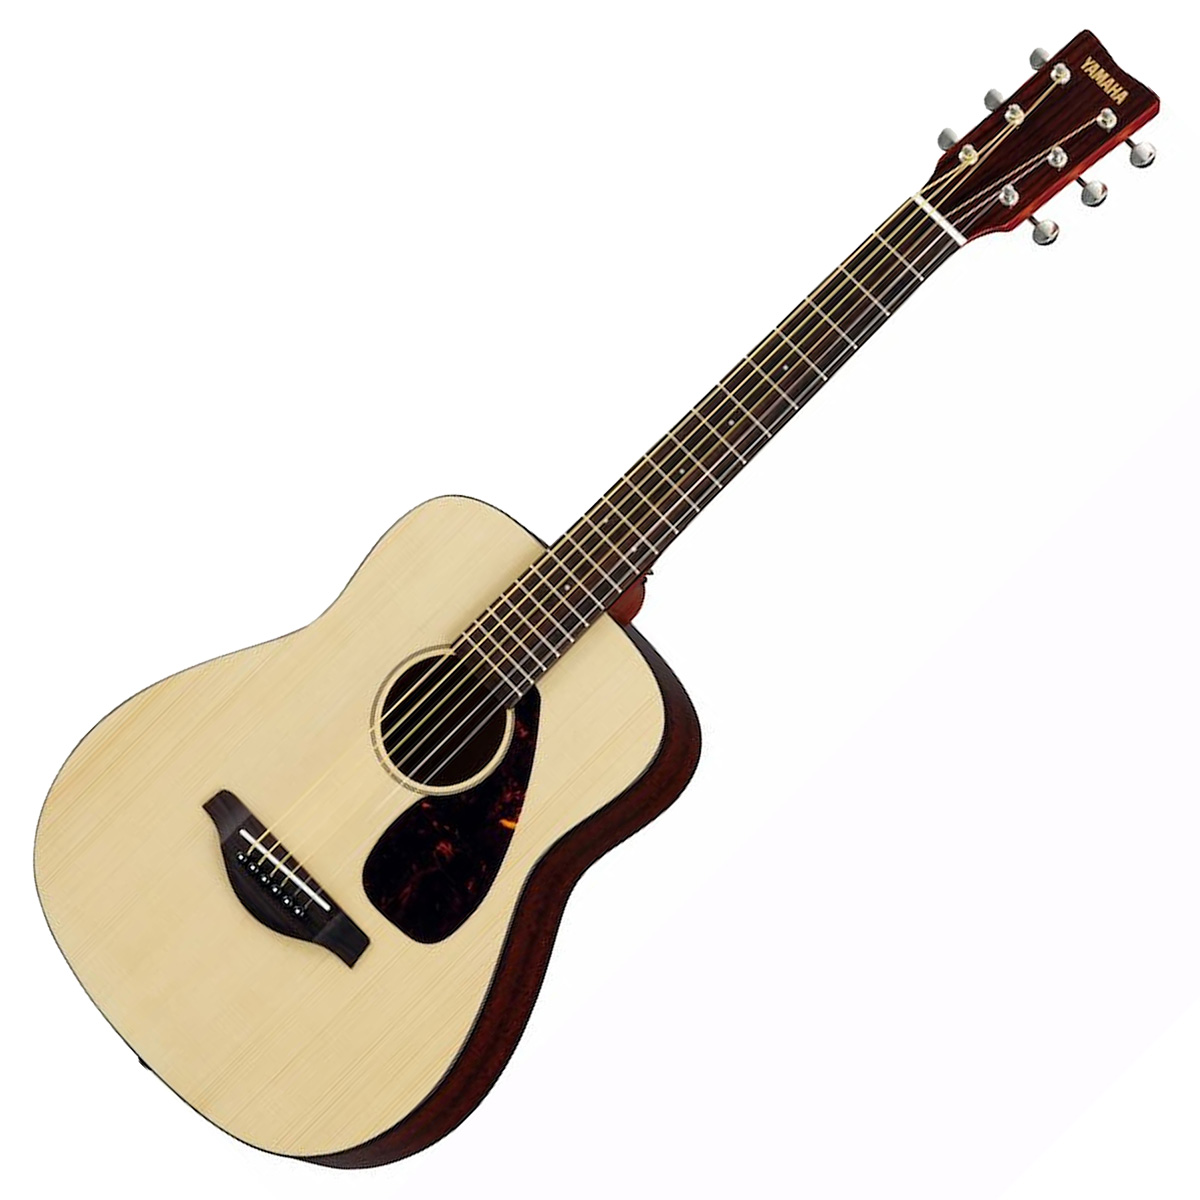 何でも揃う YAMAHA FG-Junior ミニギター JR2S アコースティックギター